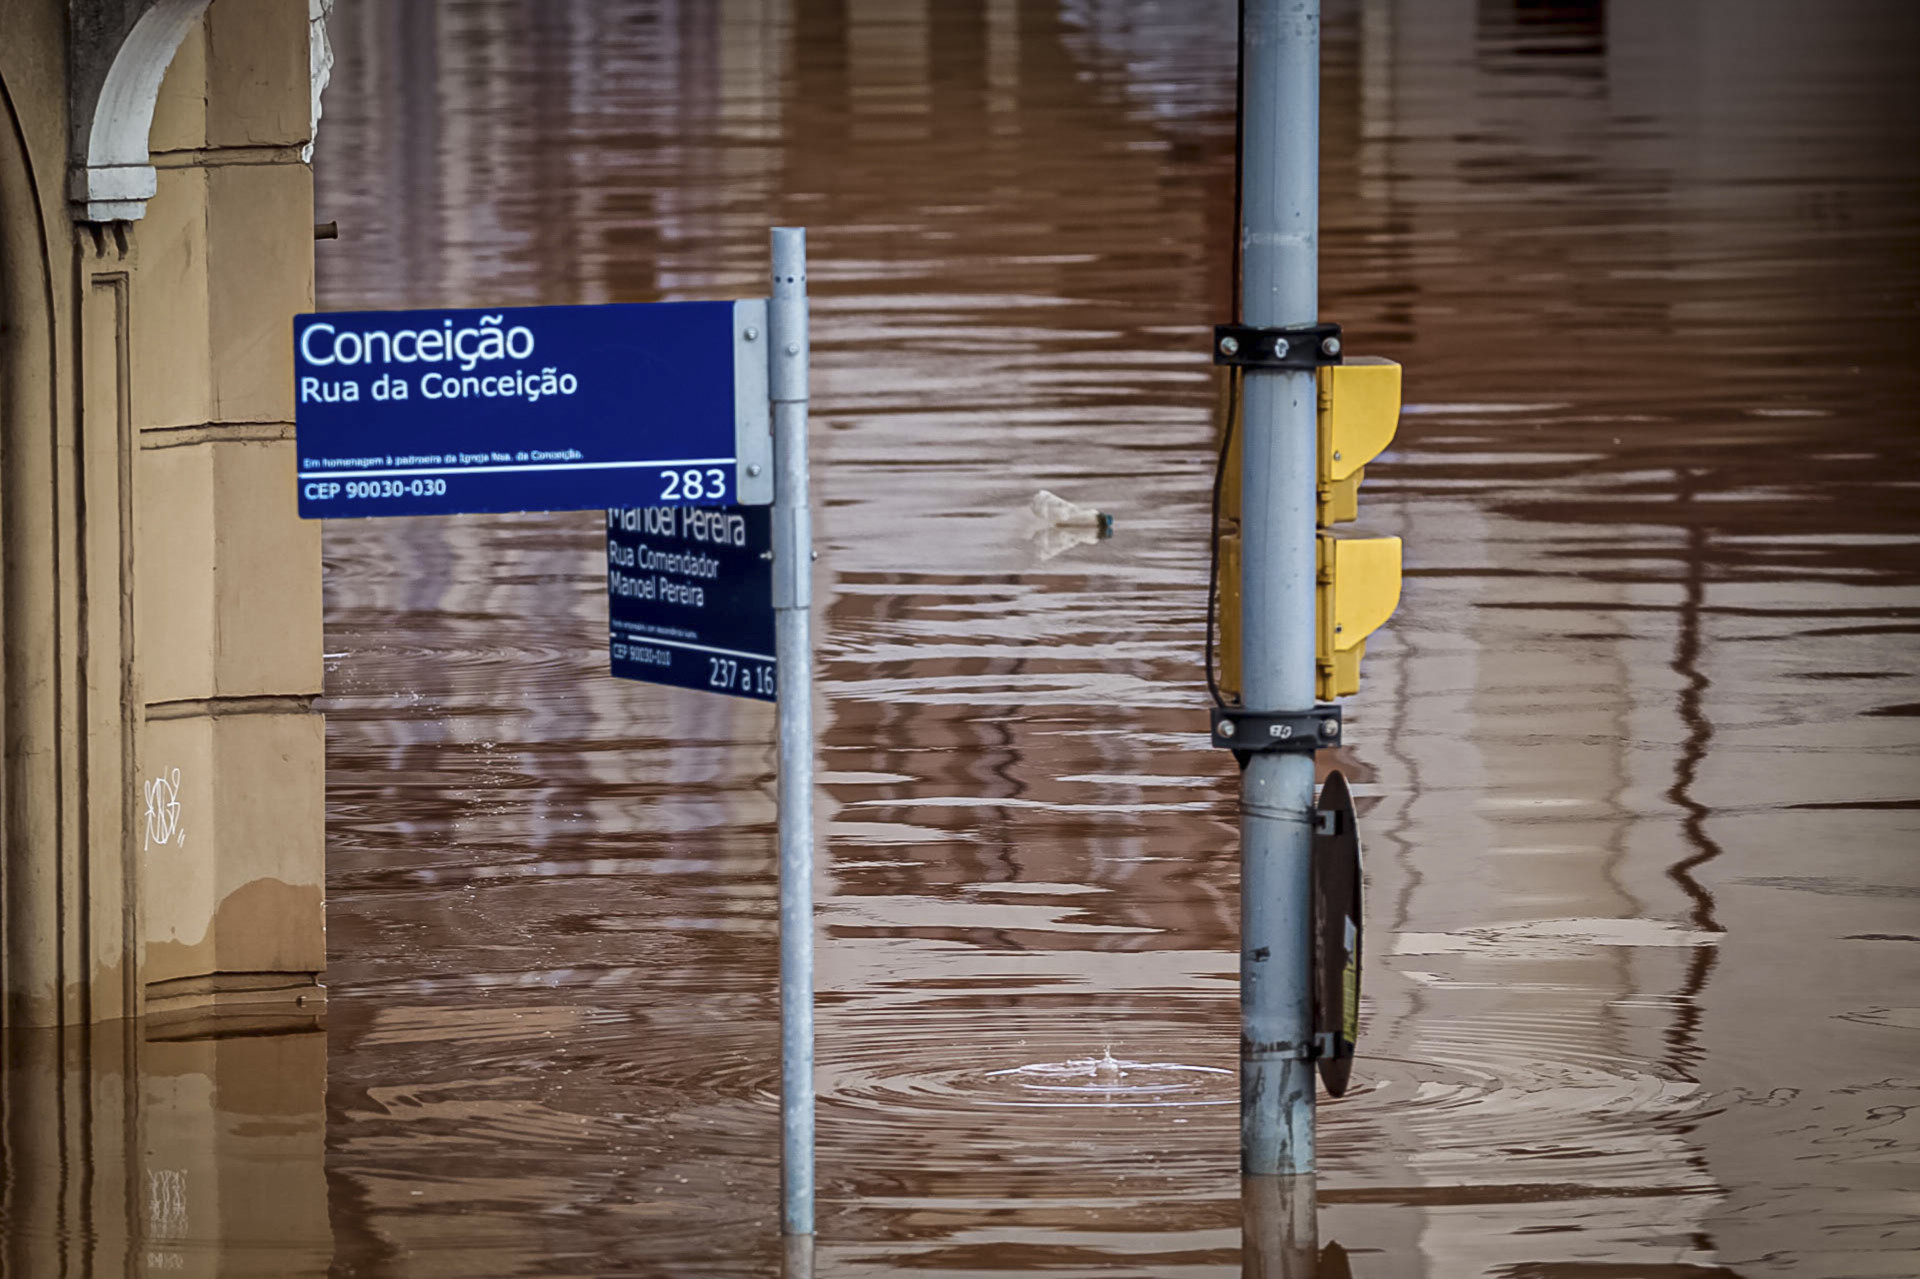 ￼ÁREA central da cidade de Porto Alegre está ilhada devido as fortes chuvas (Foto: Gilmar Alves / ASI / Estadão Conteúdo)